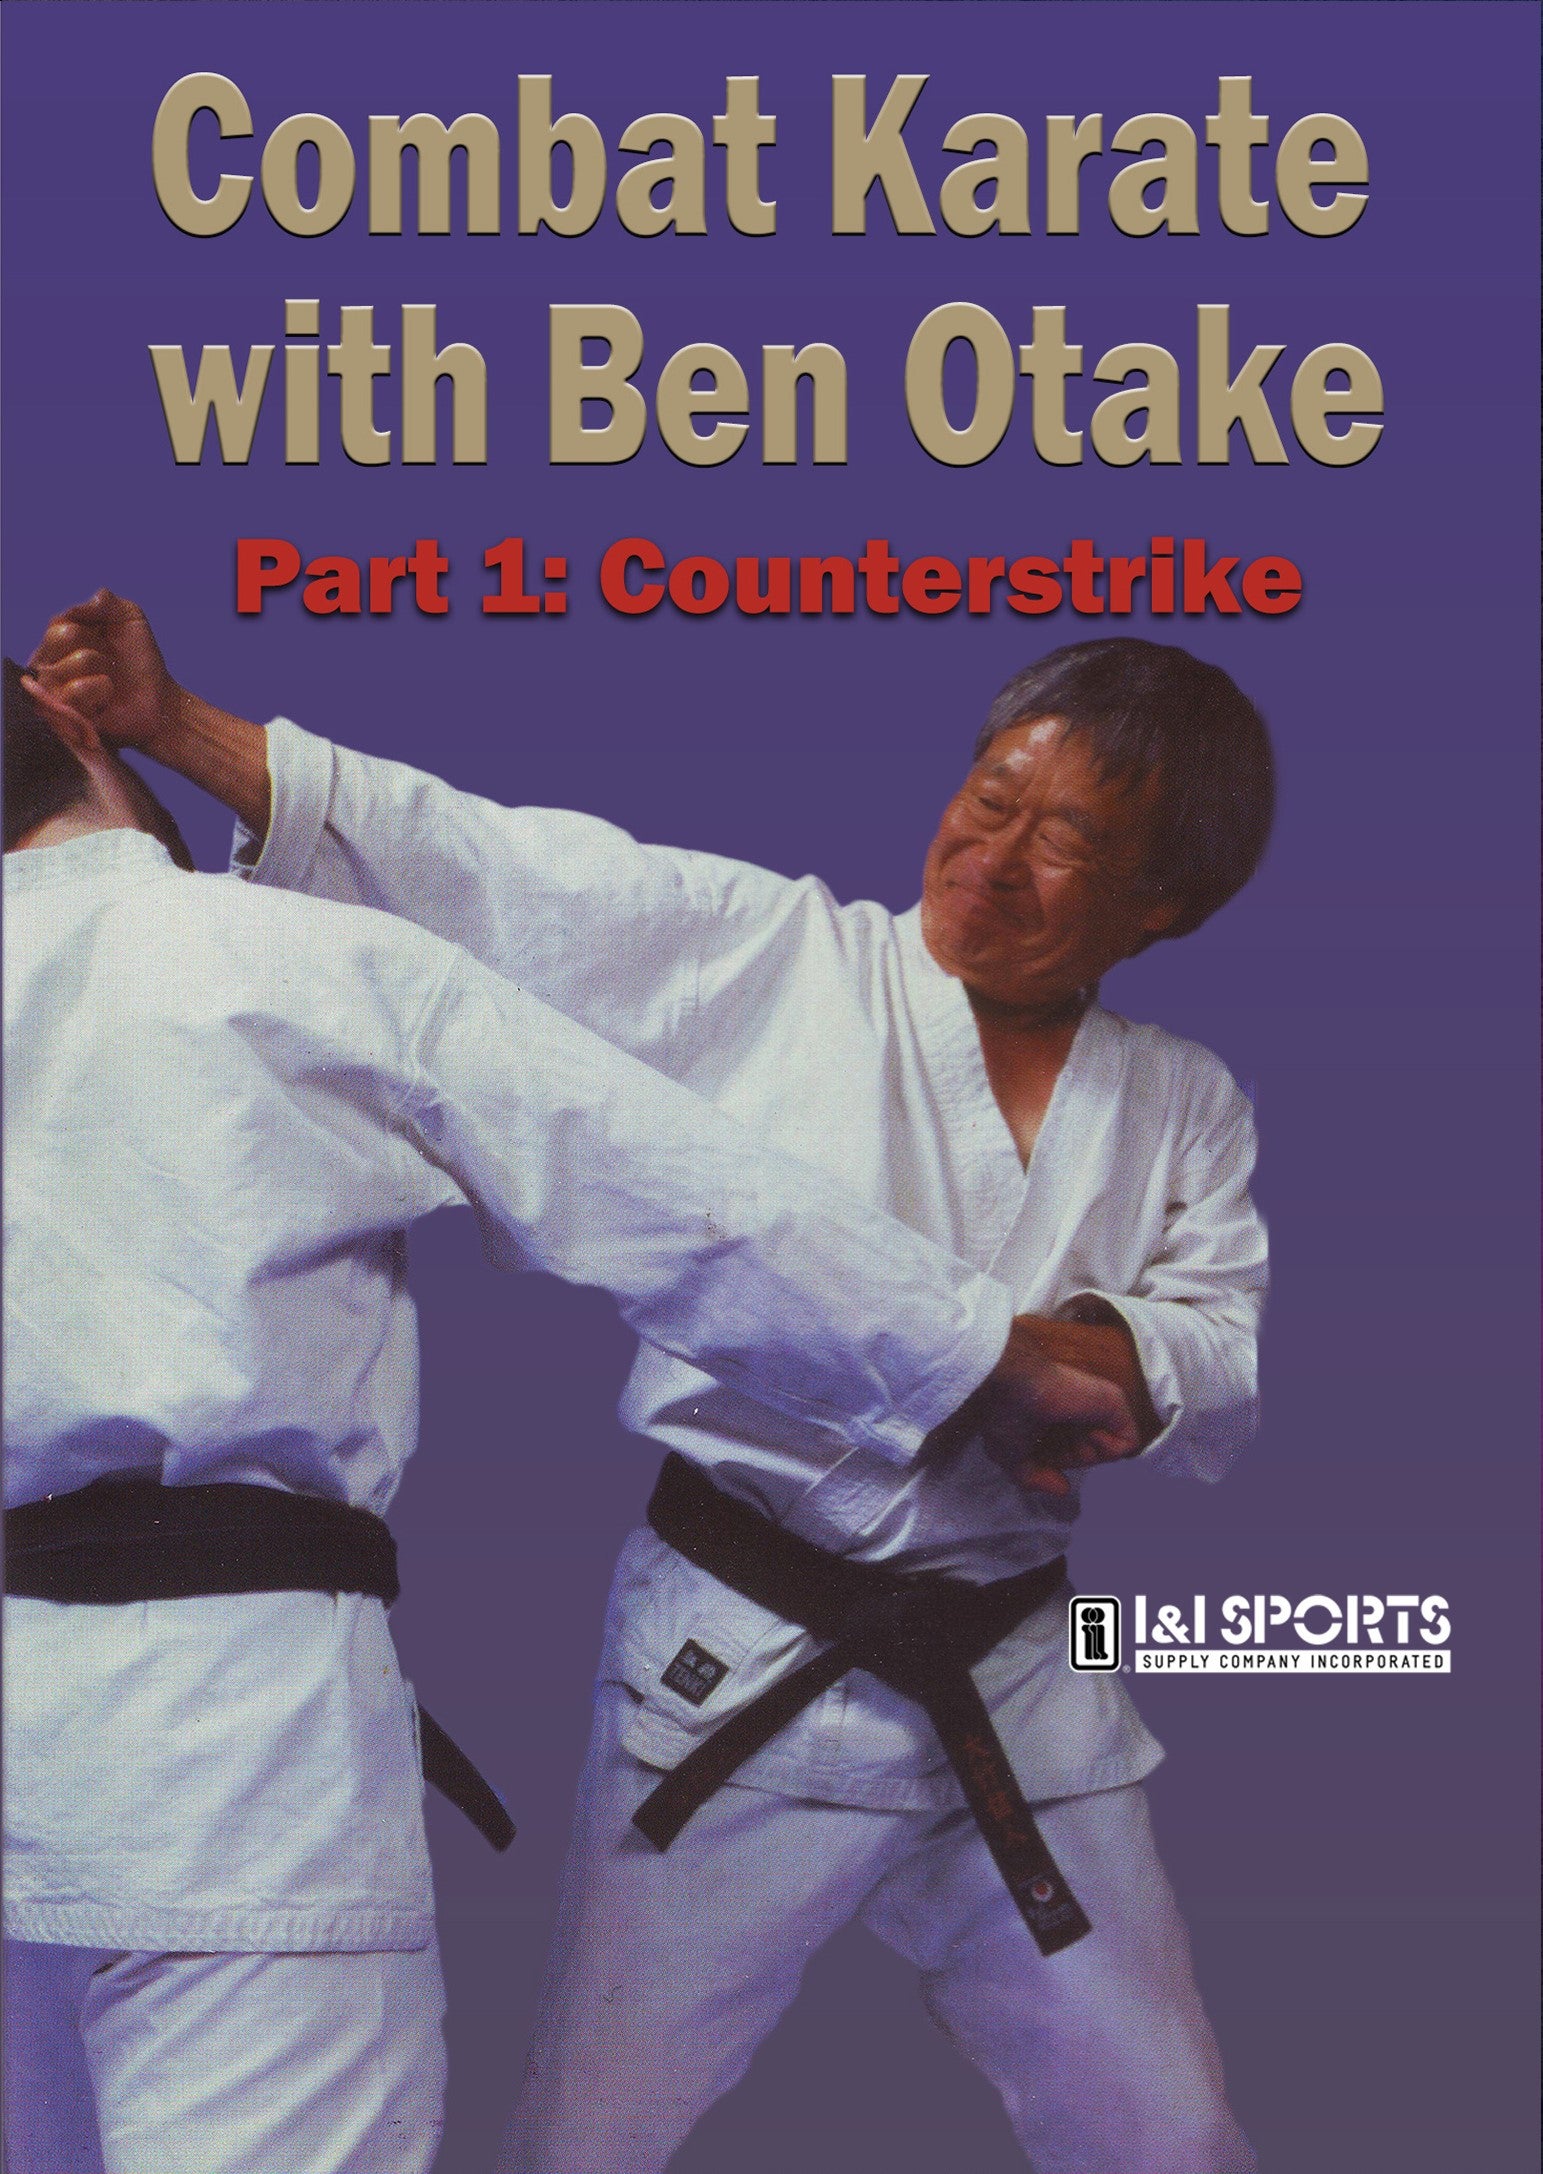 Combat Karate #1 Counterstrikes DVD Ben Otake traditional martial arts